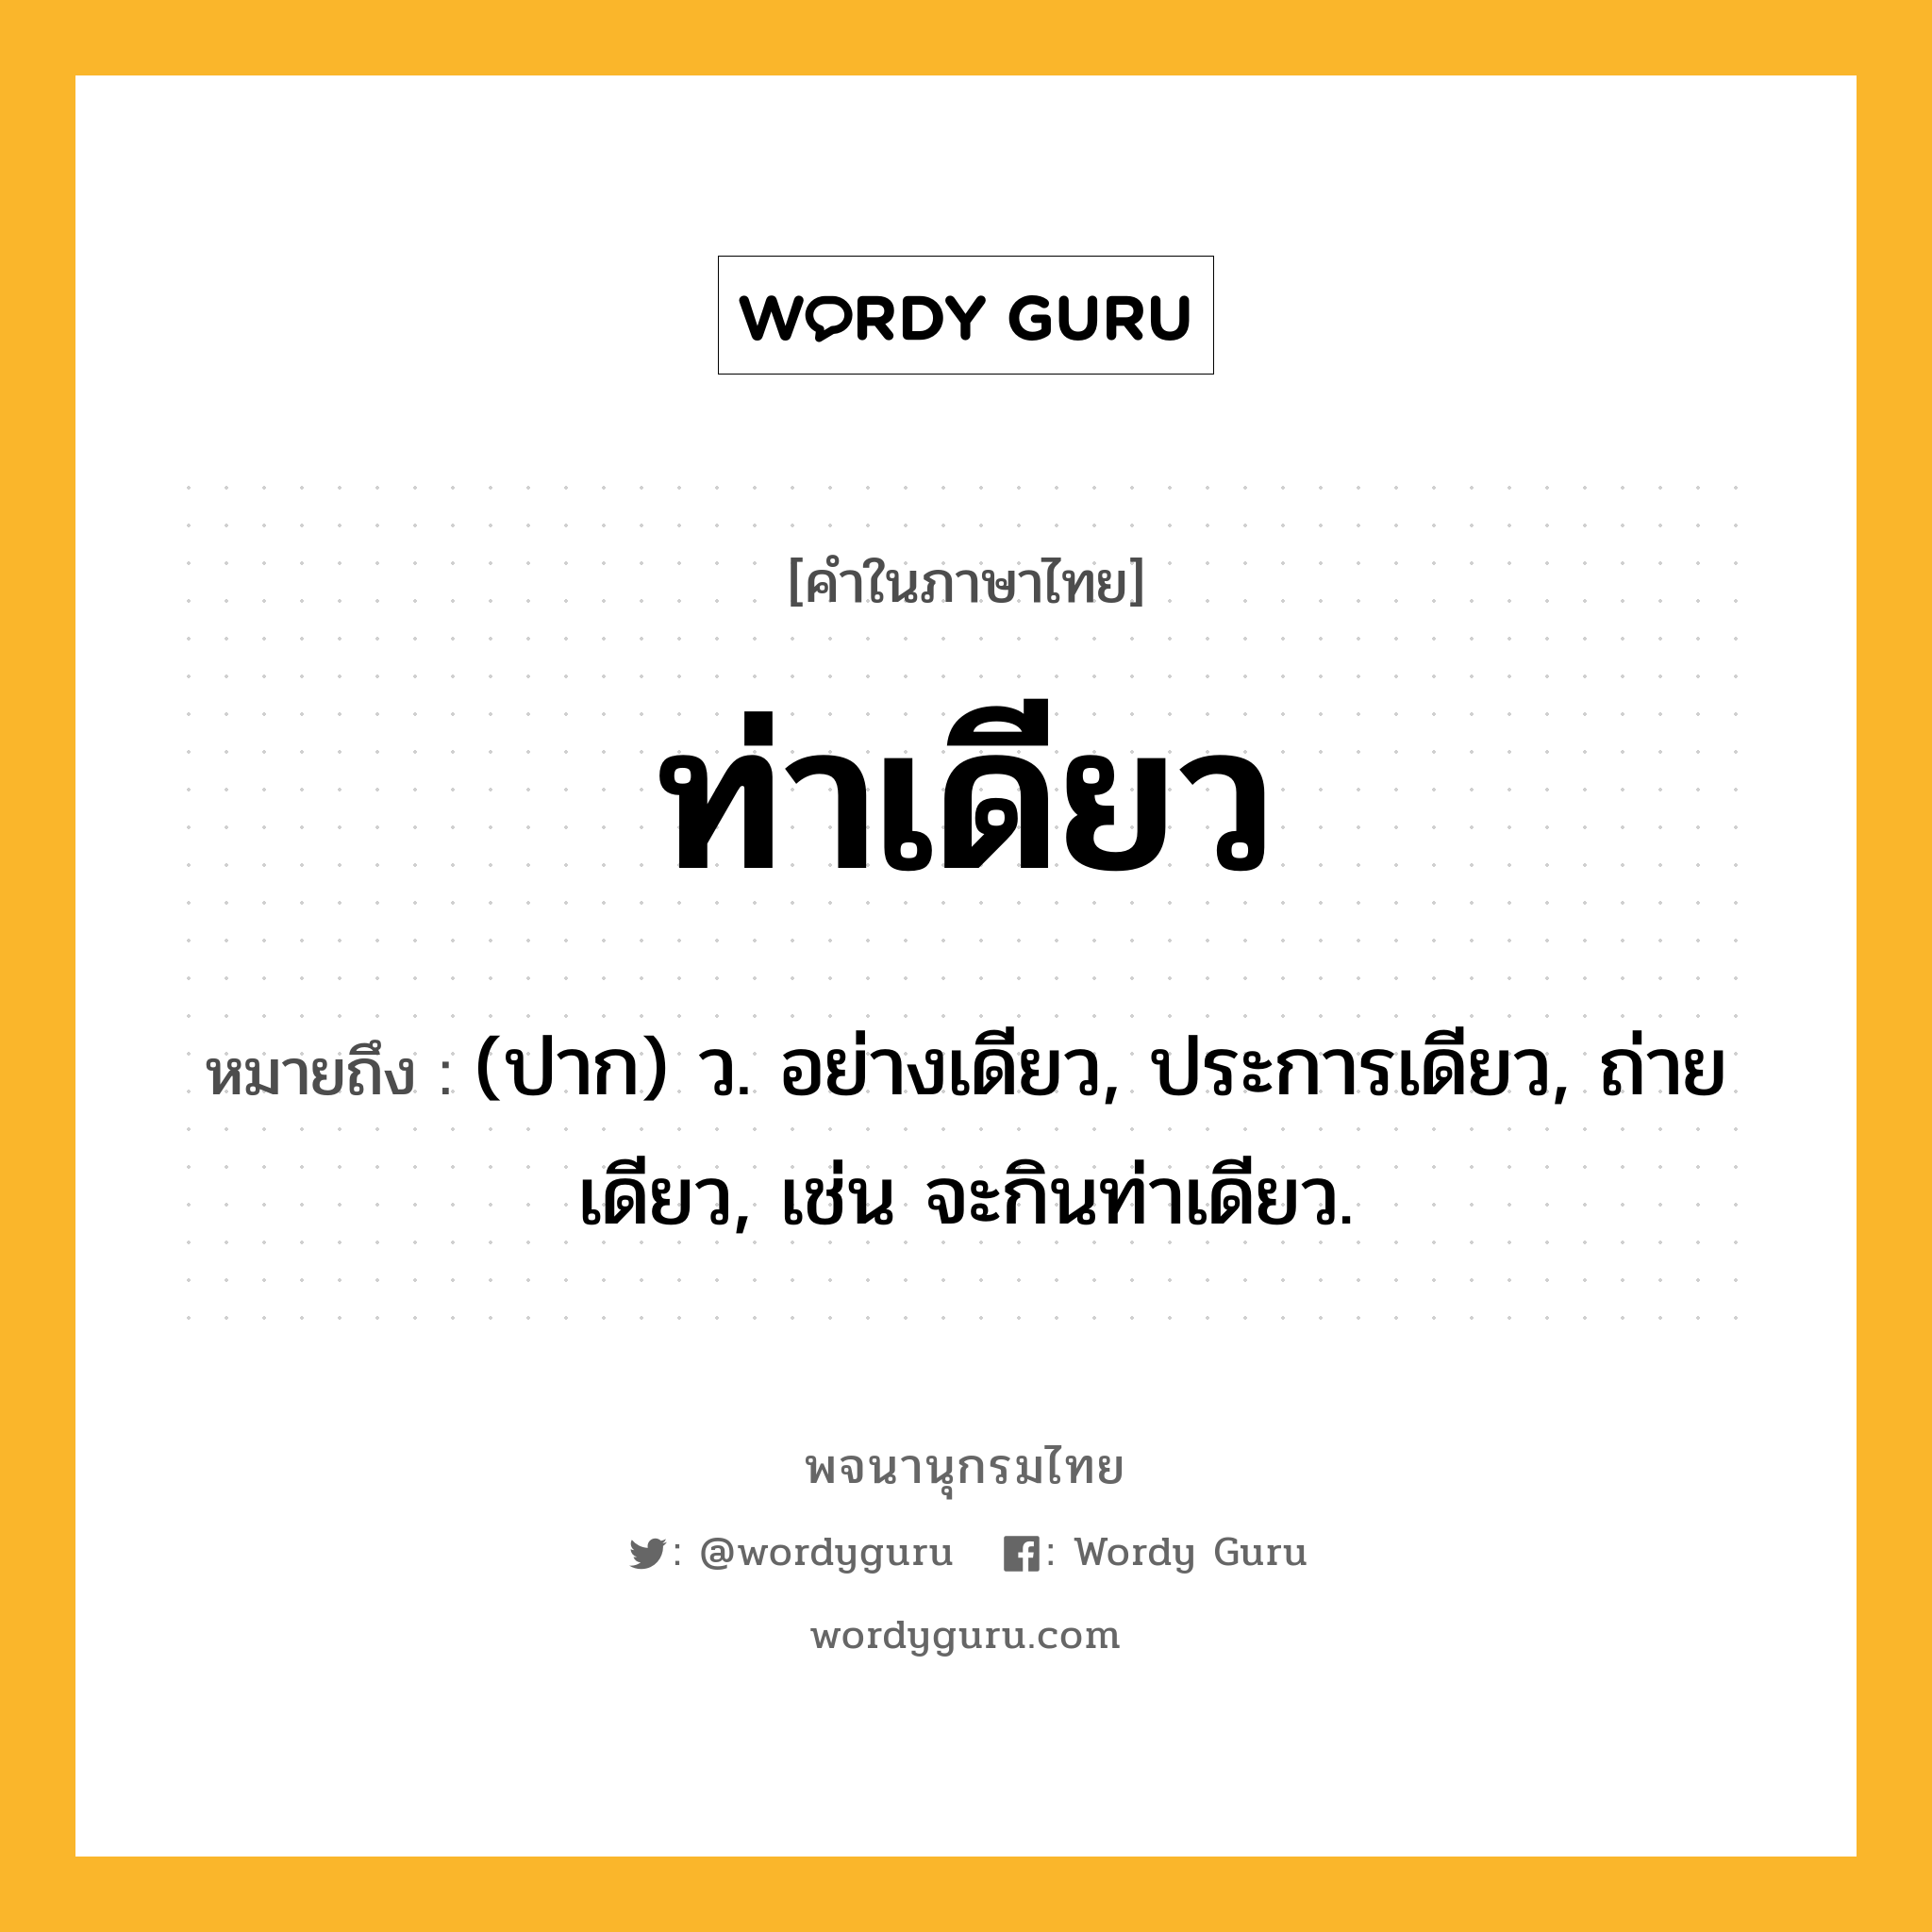 ท่าเดียว ความหมาย หมายถึงอะไร?, คำในภาษาไทย ท่าเดียว หมายถึง (ปาก) ว. อย่างเดียว, ประการเดียว, ถ่ายเดียว, เช่น จะกินท่าเดียว.